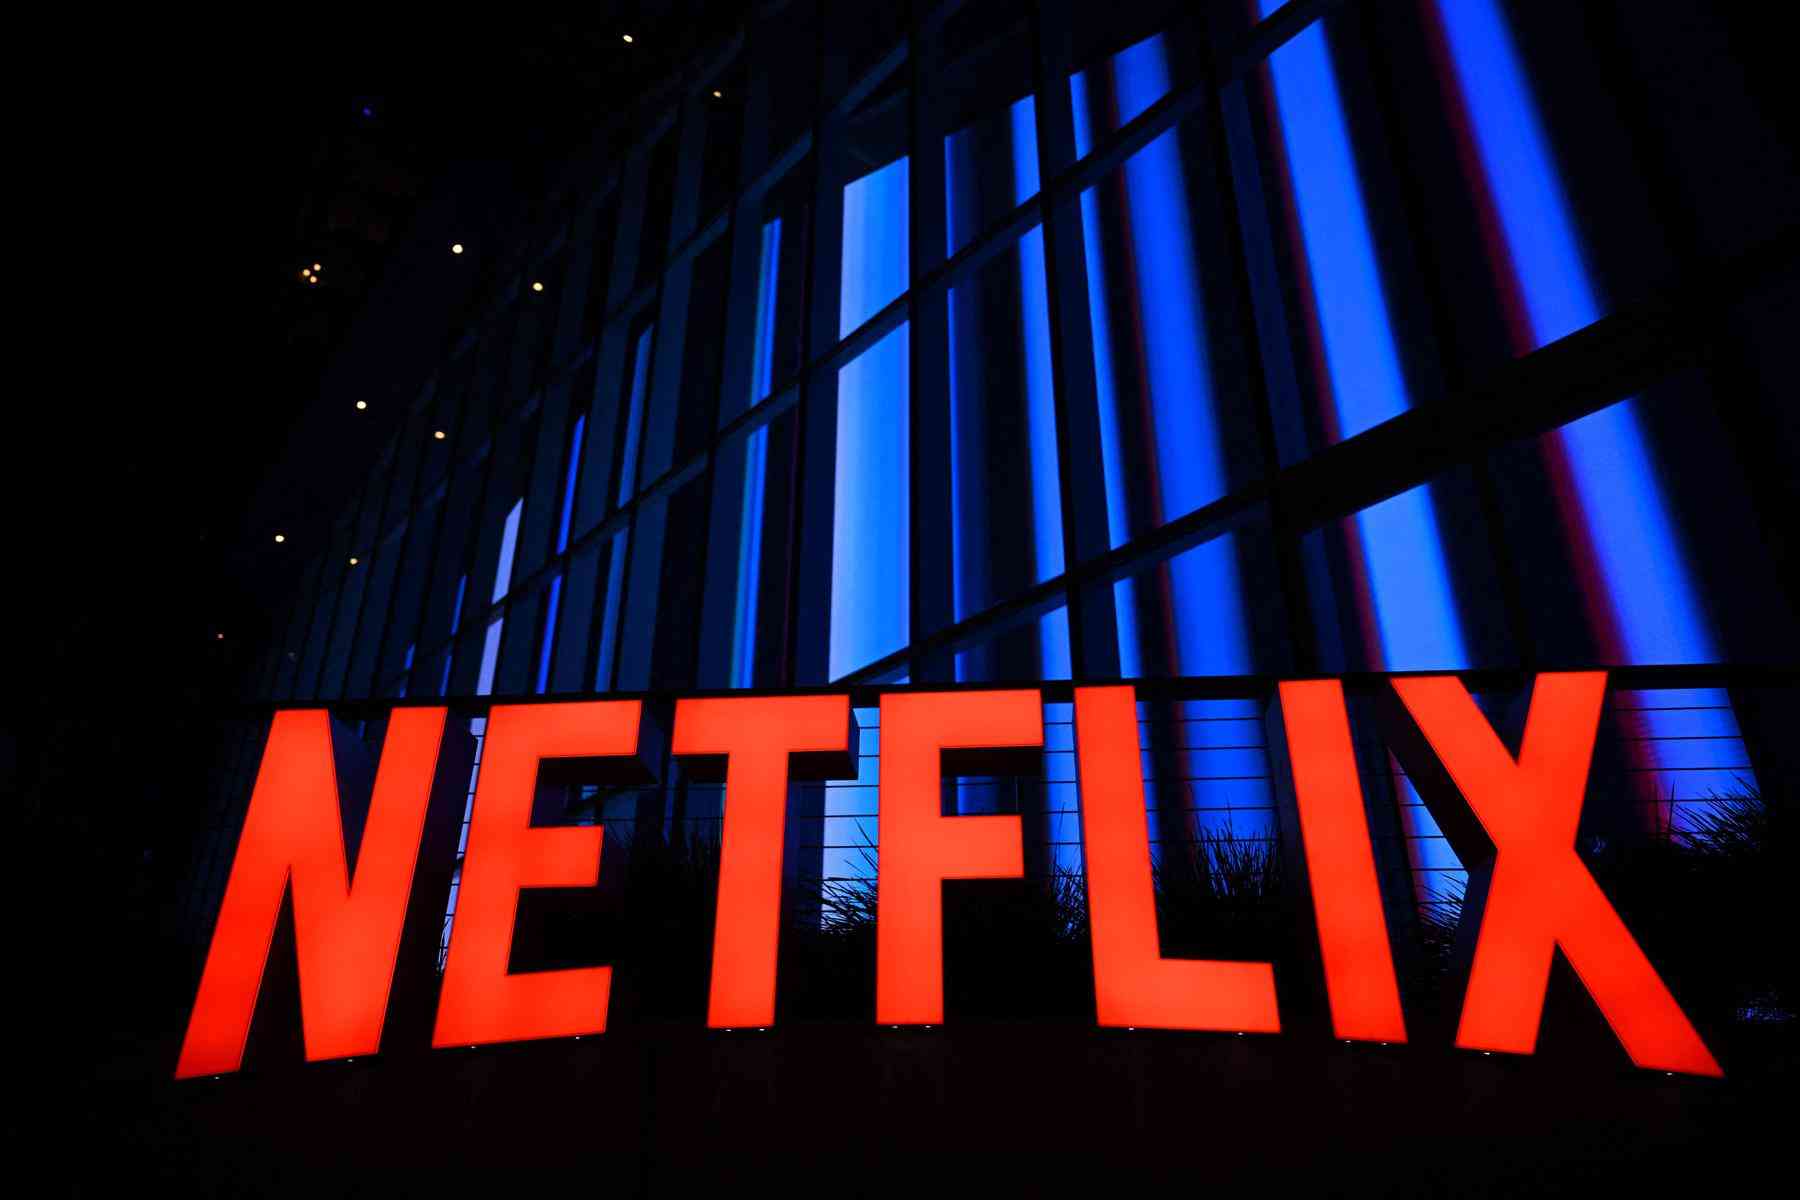 Netflix anuncia novos jogos online para os assinantes - Notícias